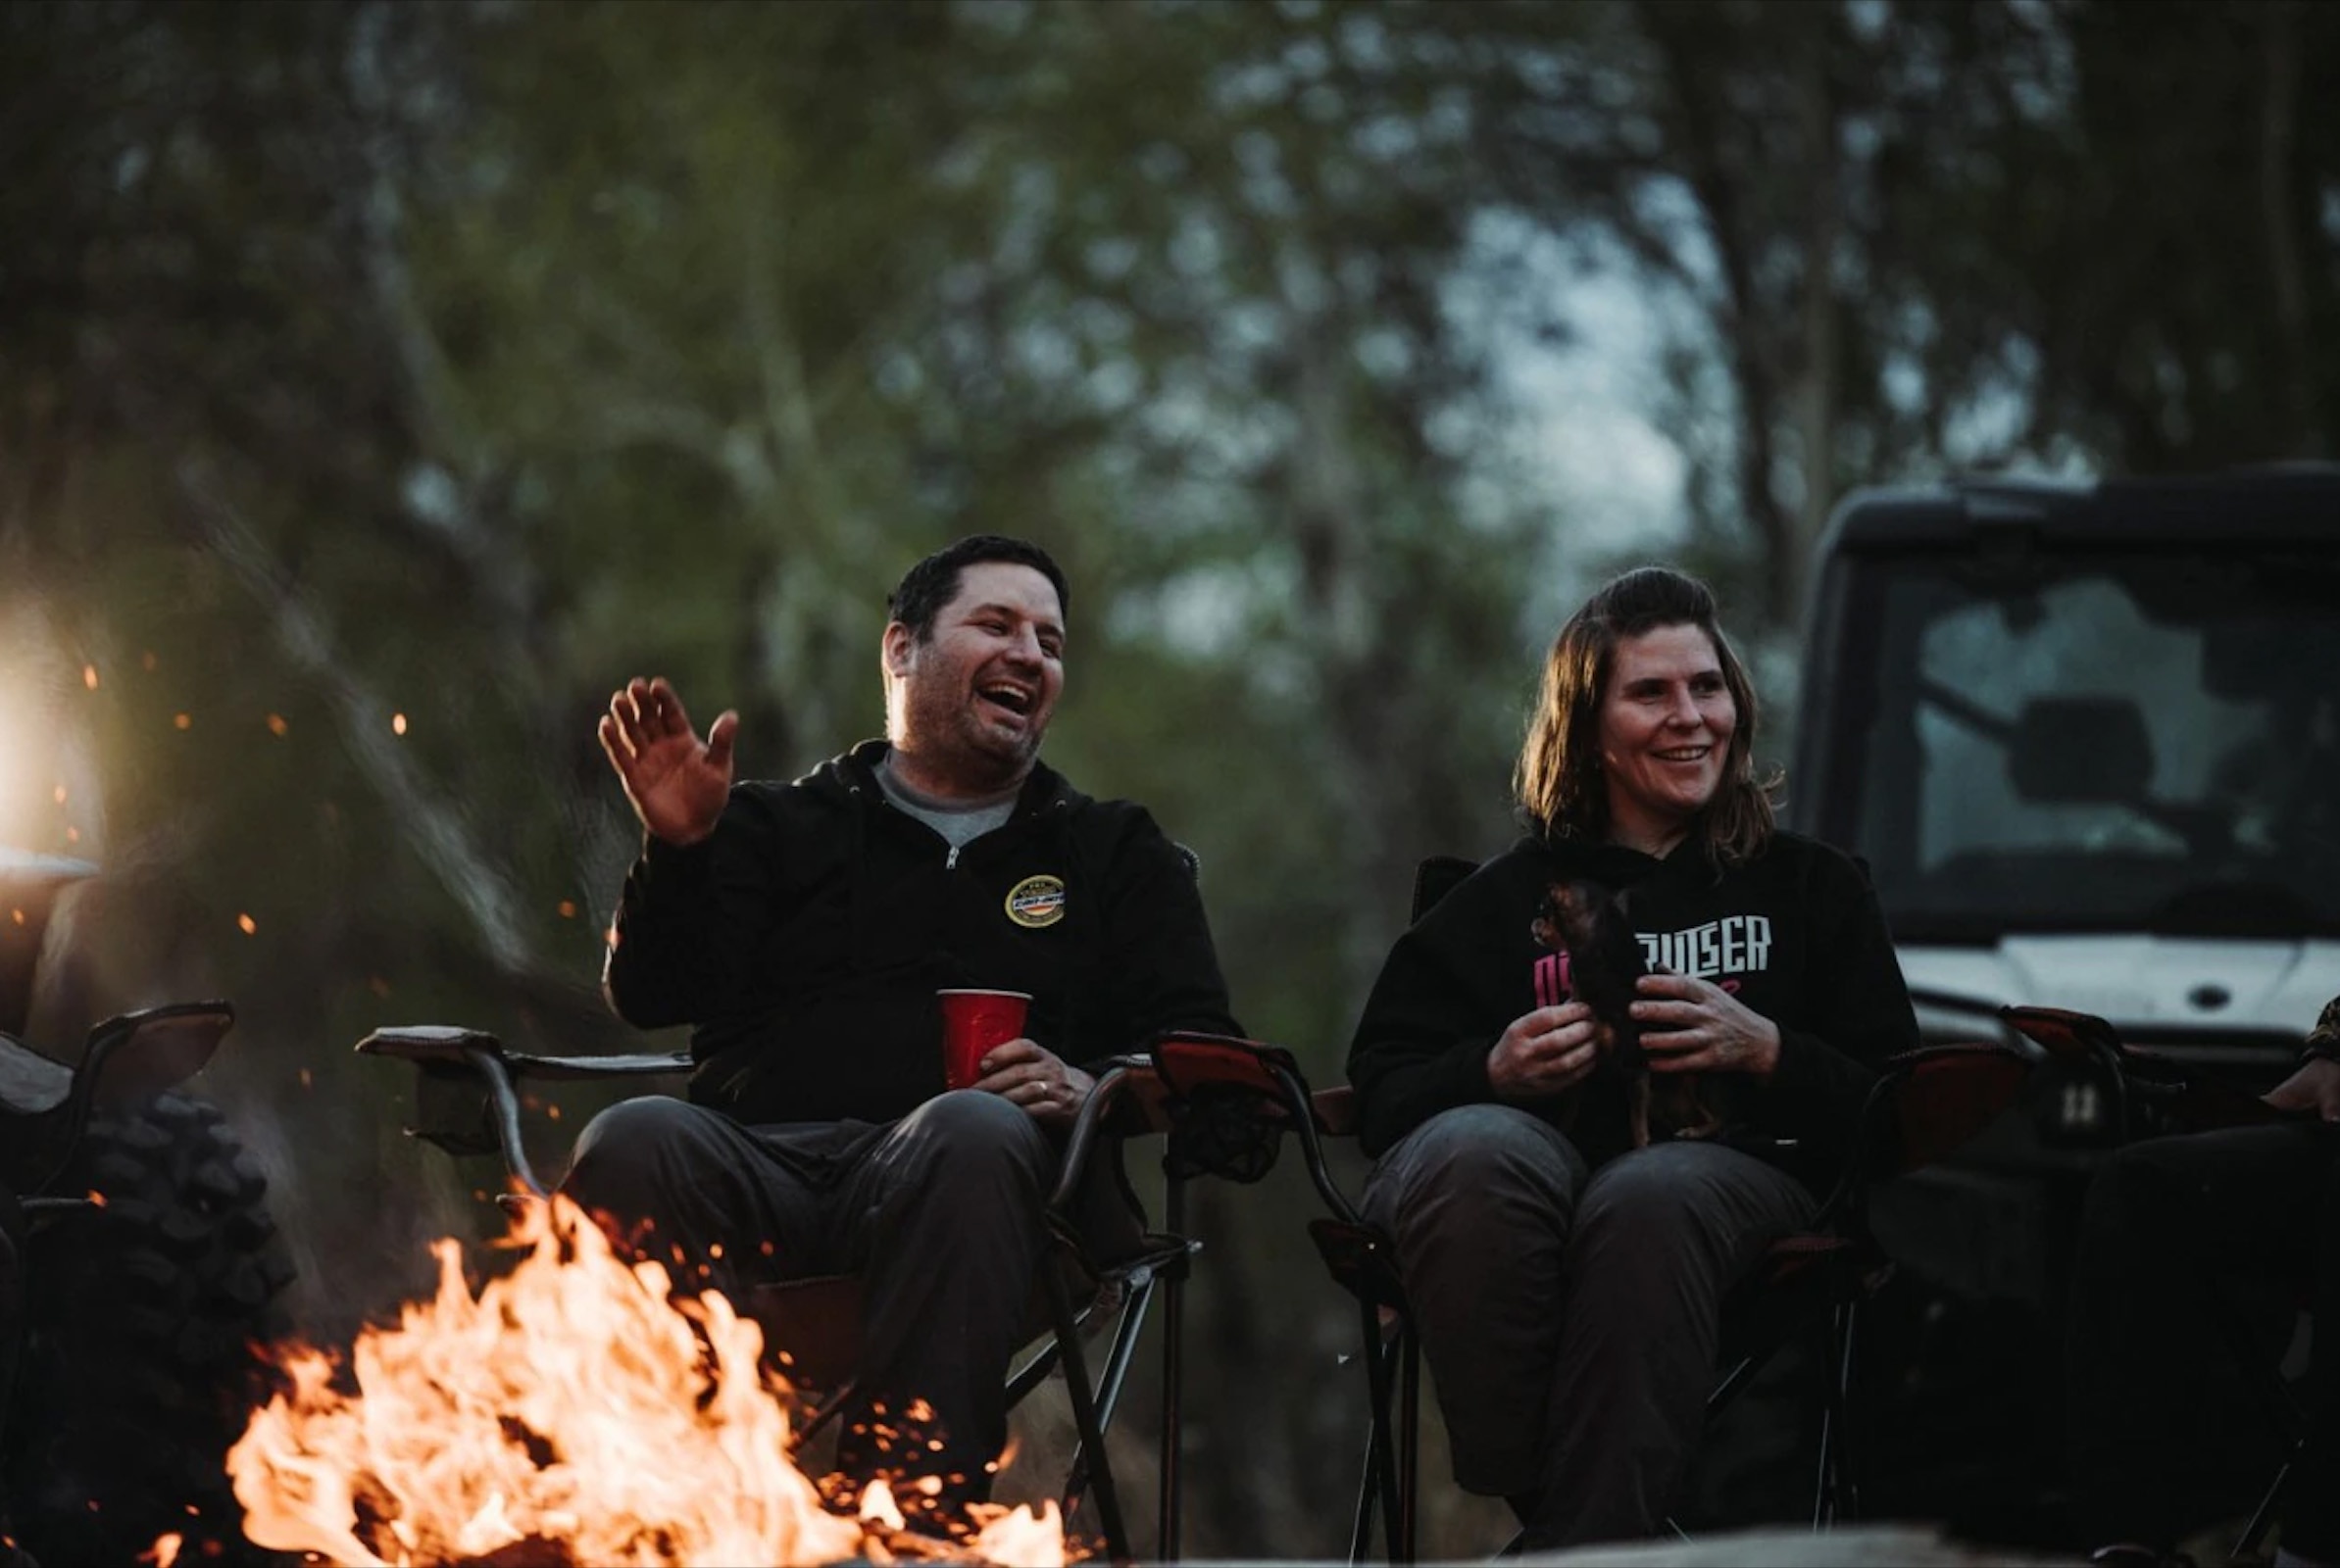 Žena a muž sediaci pri ohni, v pozadí Can-am